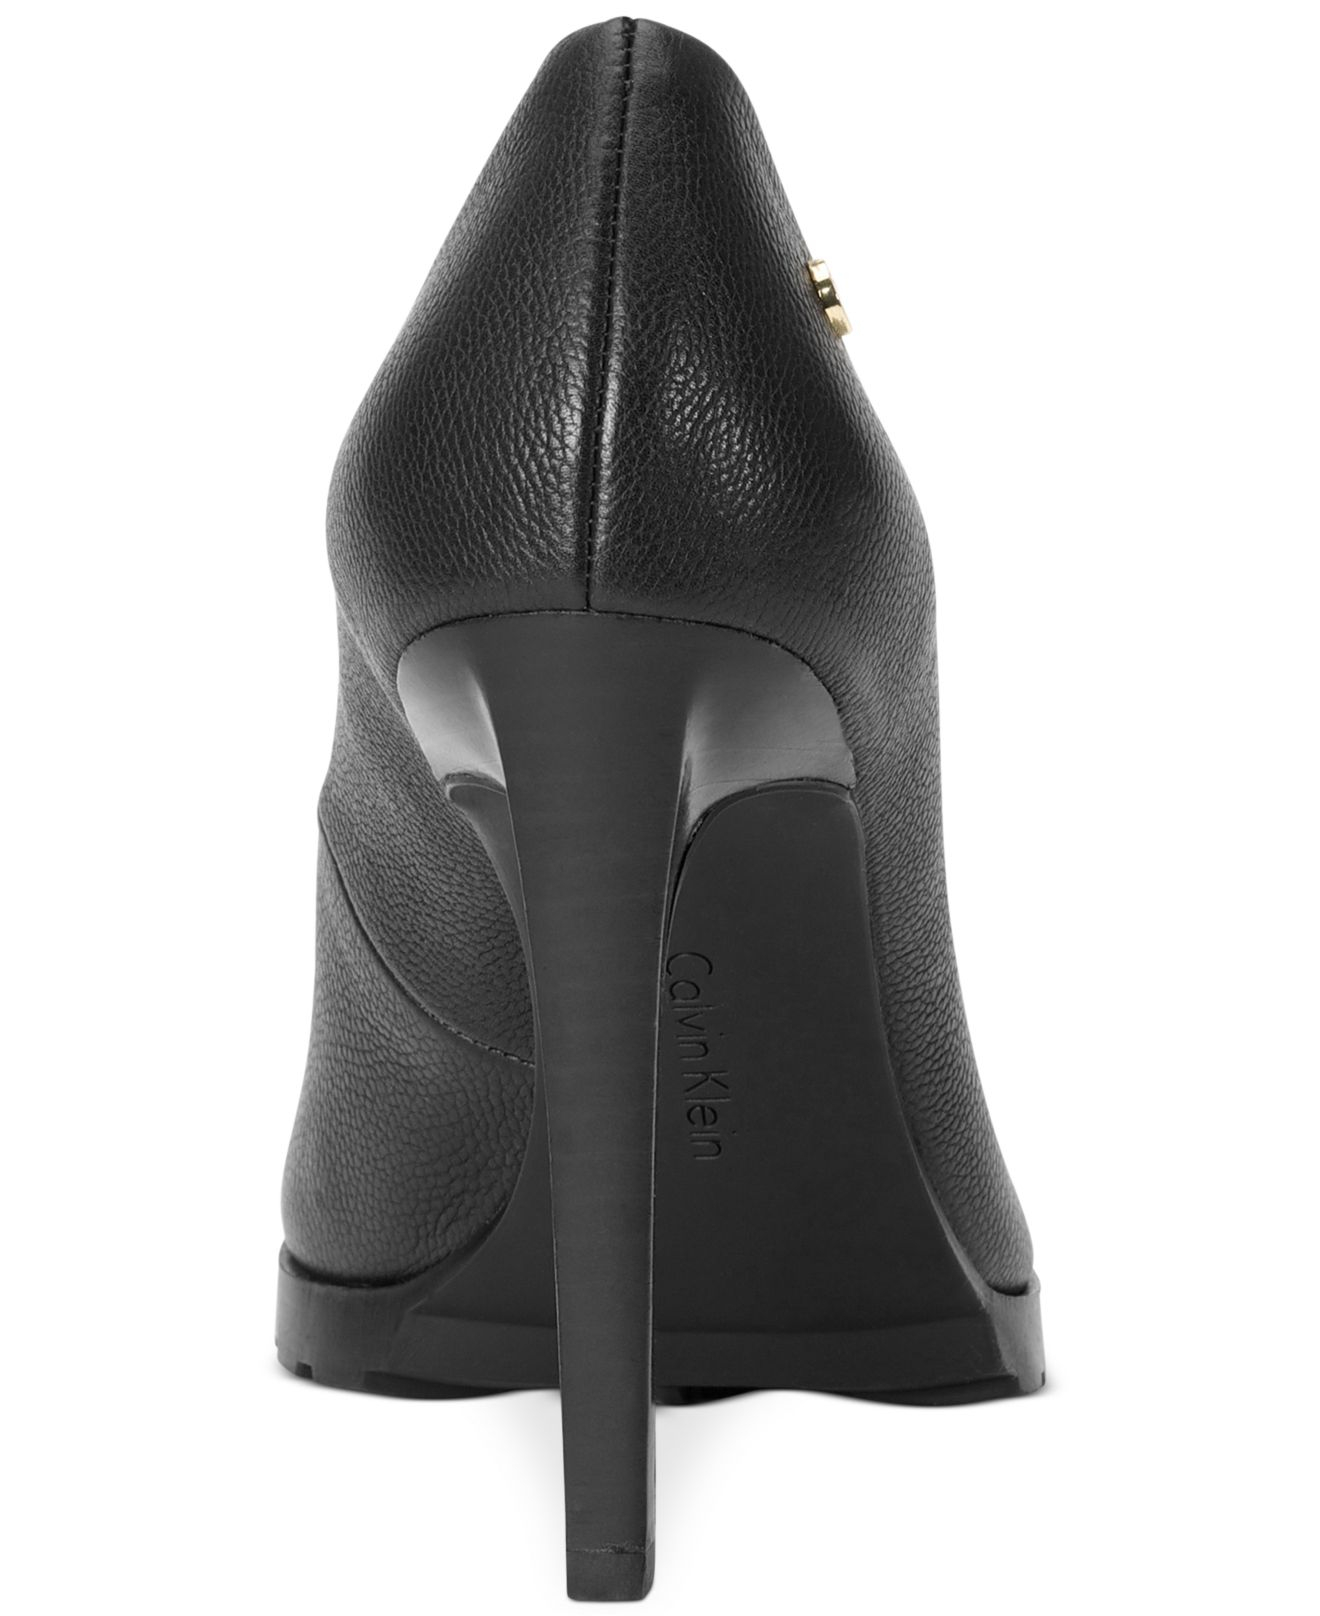 Calvin Klein Women'S Brigette Pumps in Black Leather (Black) - Lyst